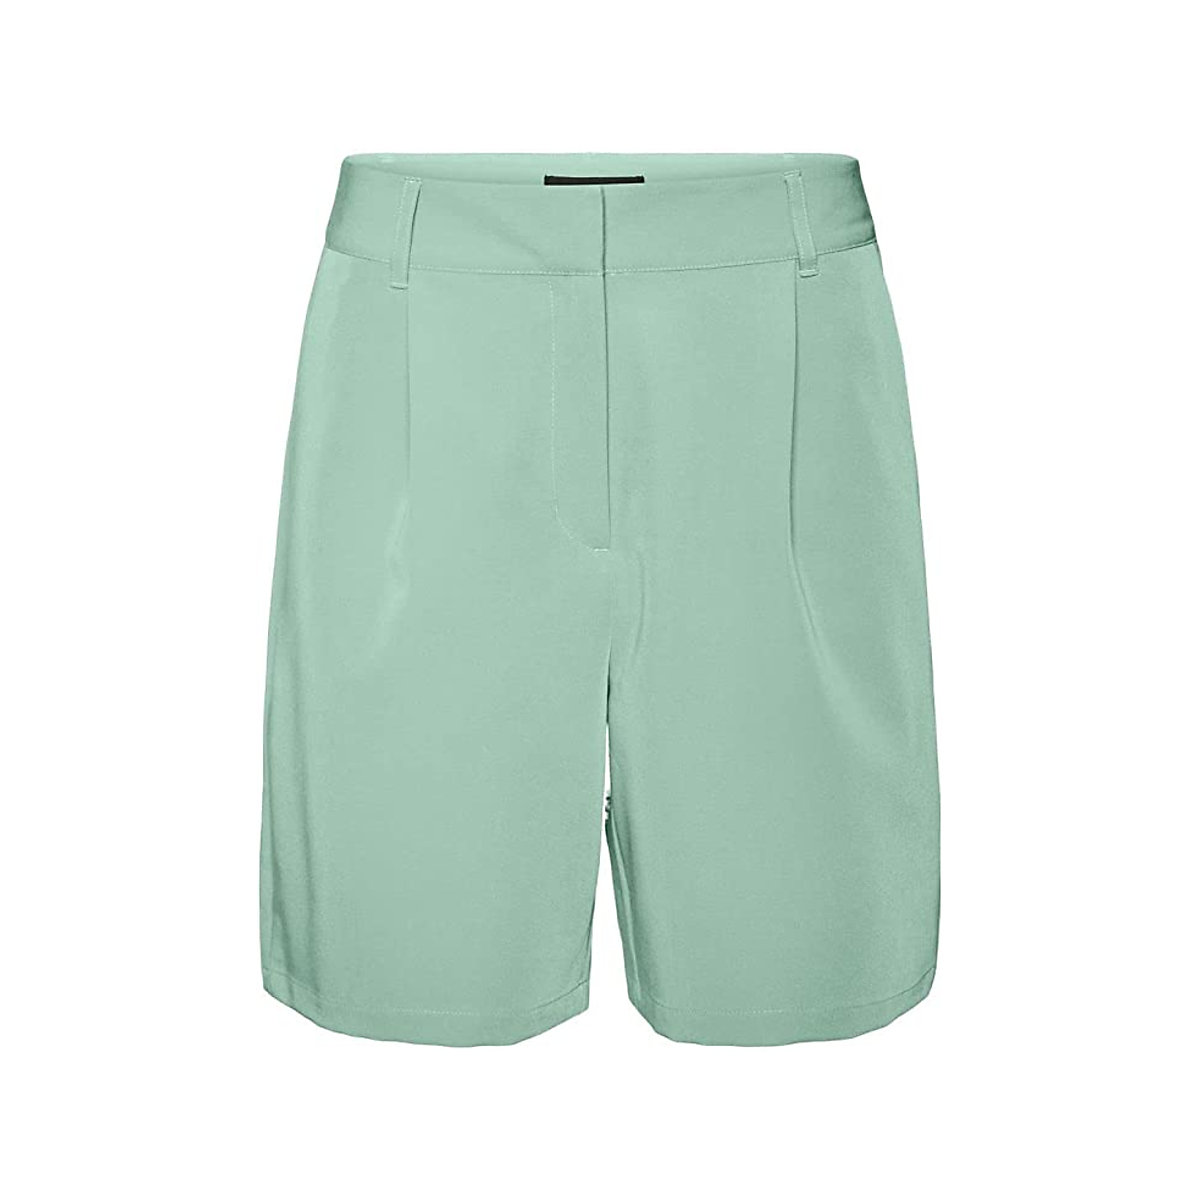 BESTSELLER Shorts für Mädchen grün